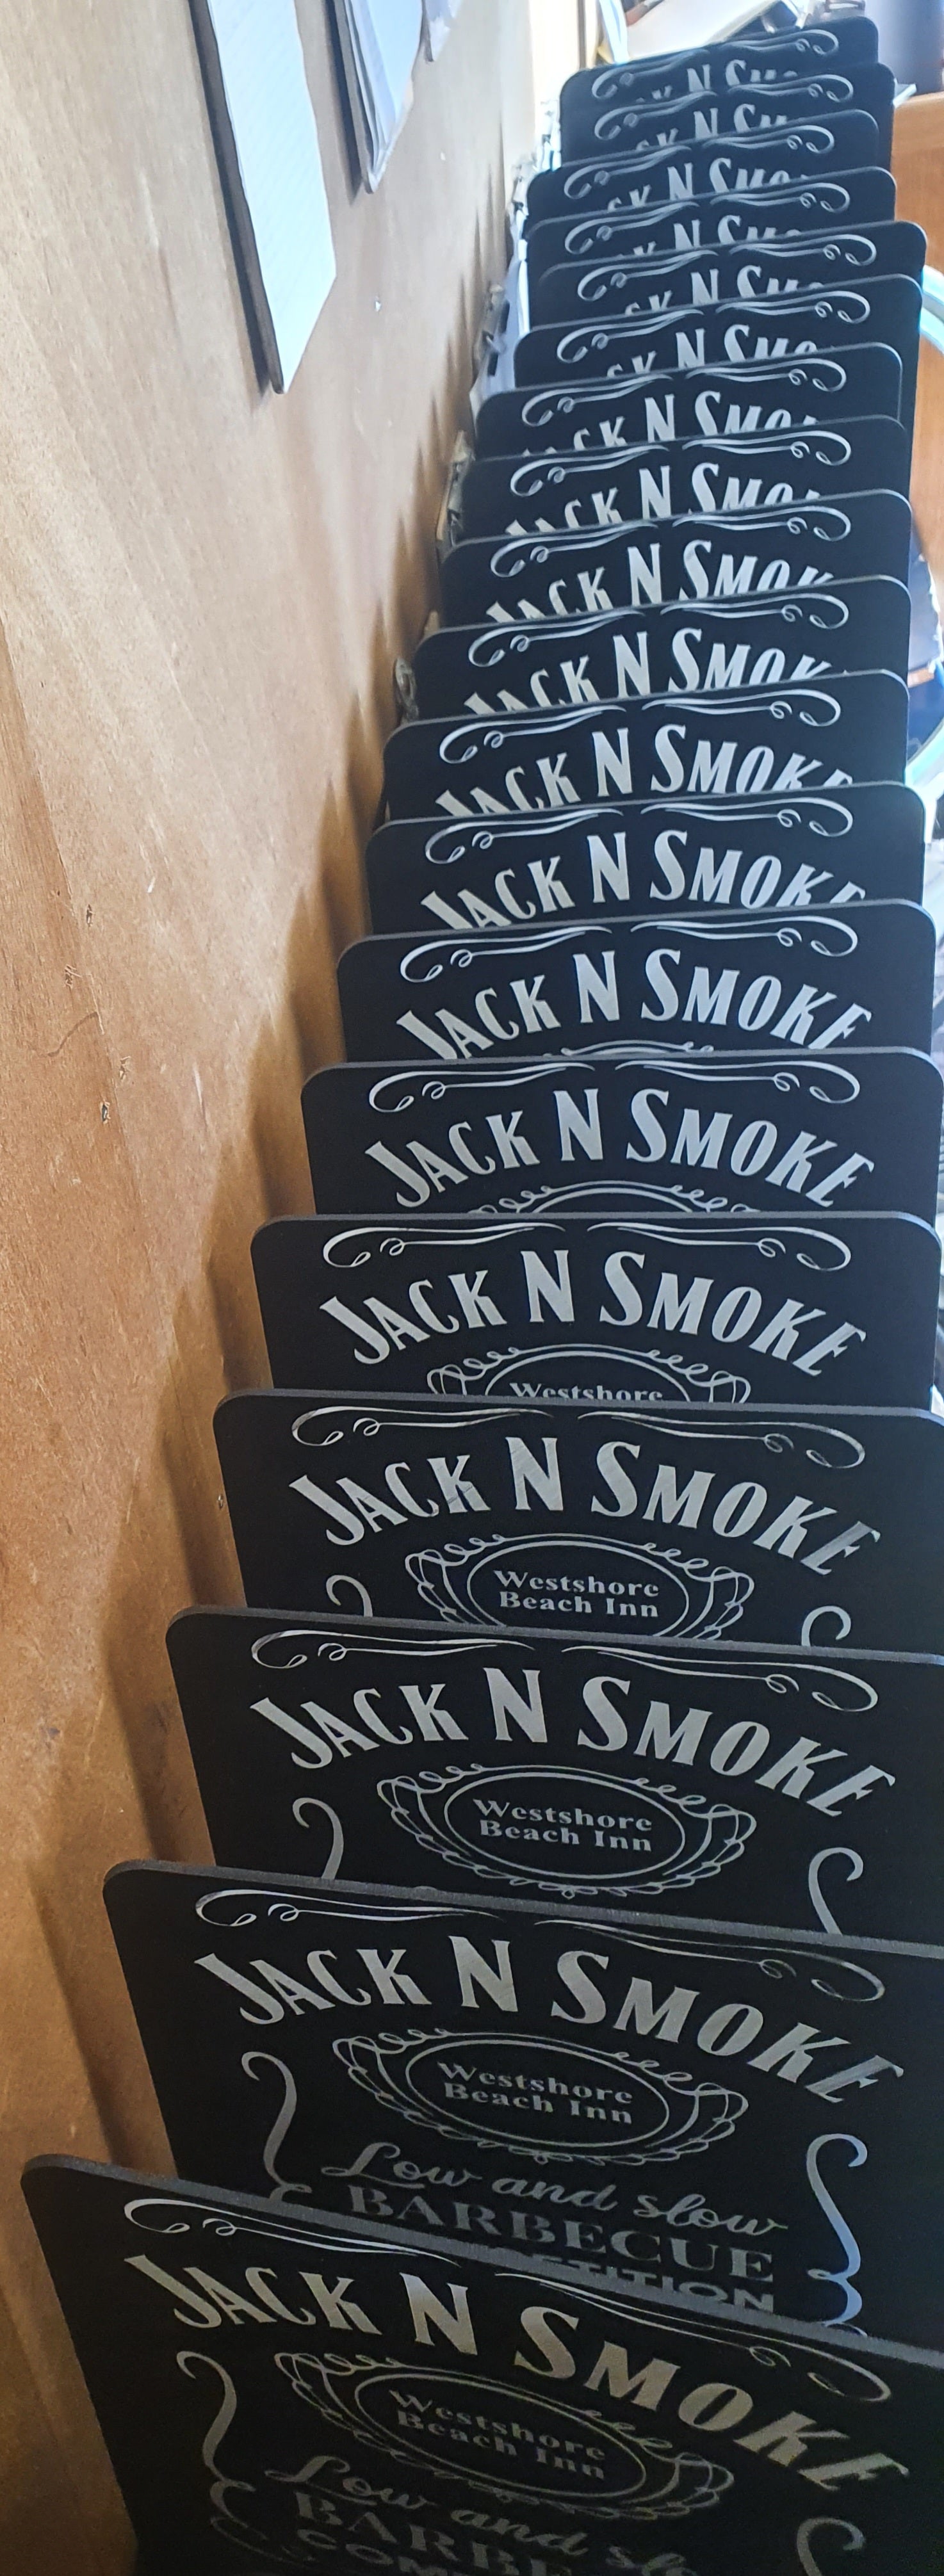 Jack N Smoke Trophies